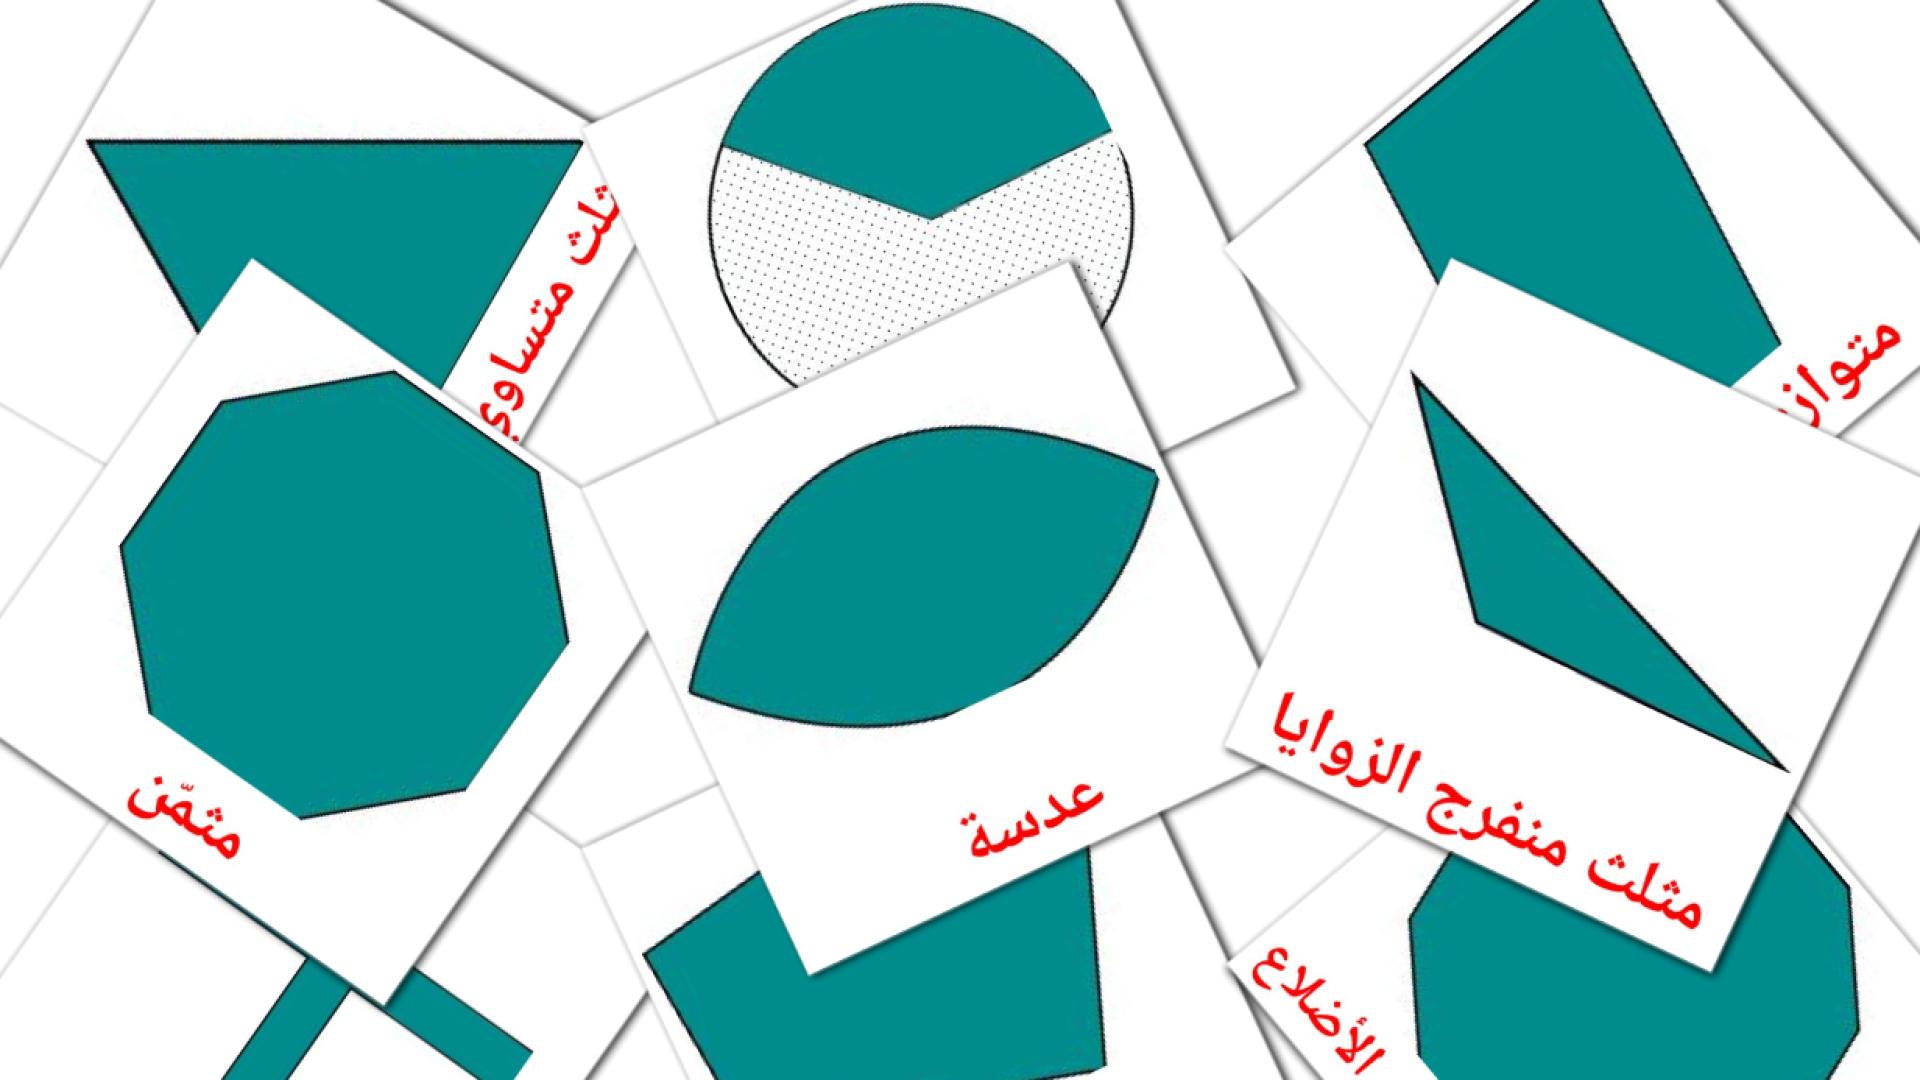 Vlakke figuren - arabische woordenschatkaarten